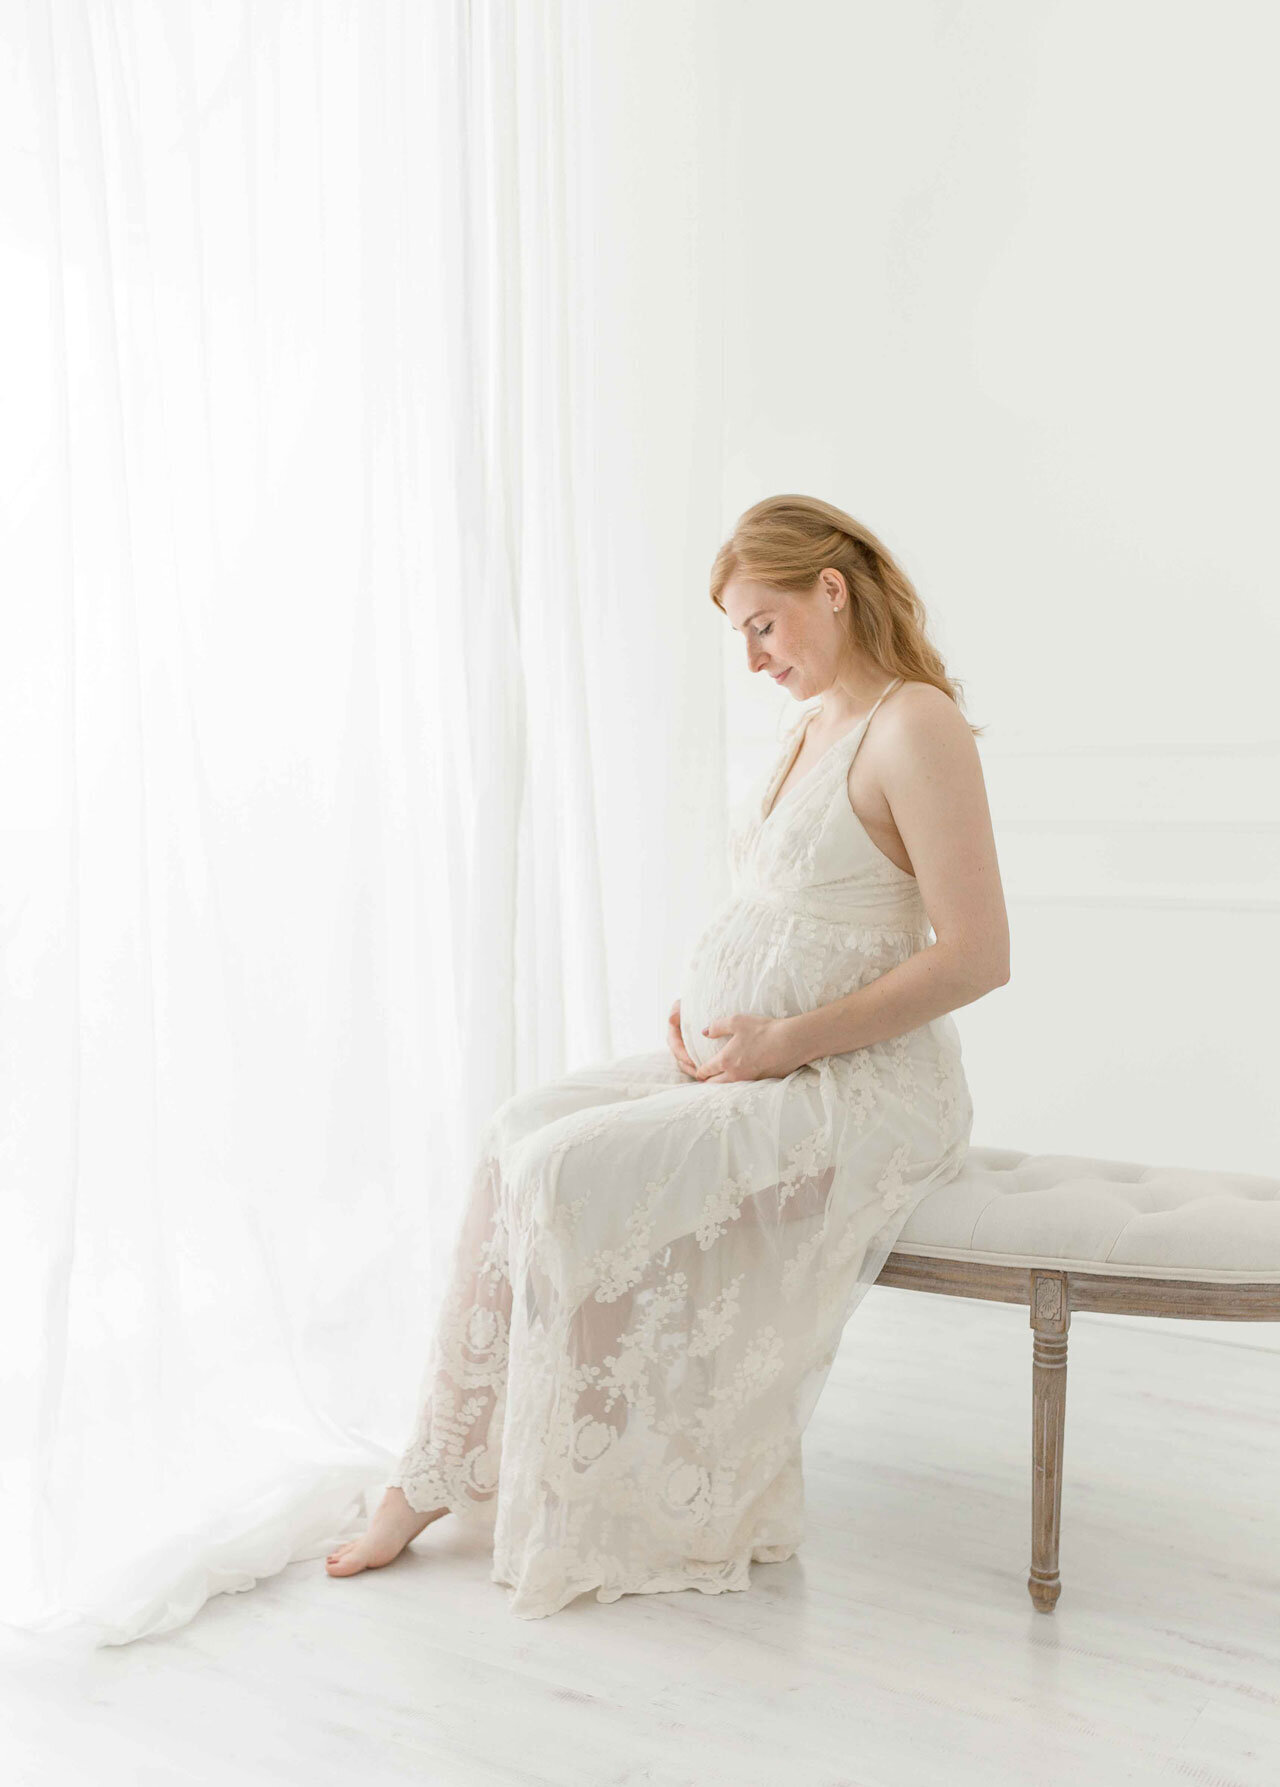 Babybauchshooting luxuriös in weiß . Schwangere Frau im langen weißen Spitzenkleid am Fenster sitzend.